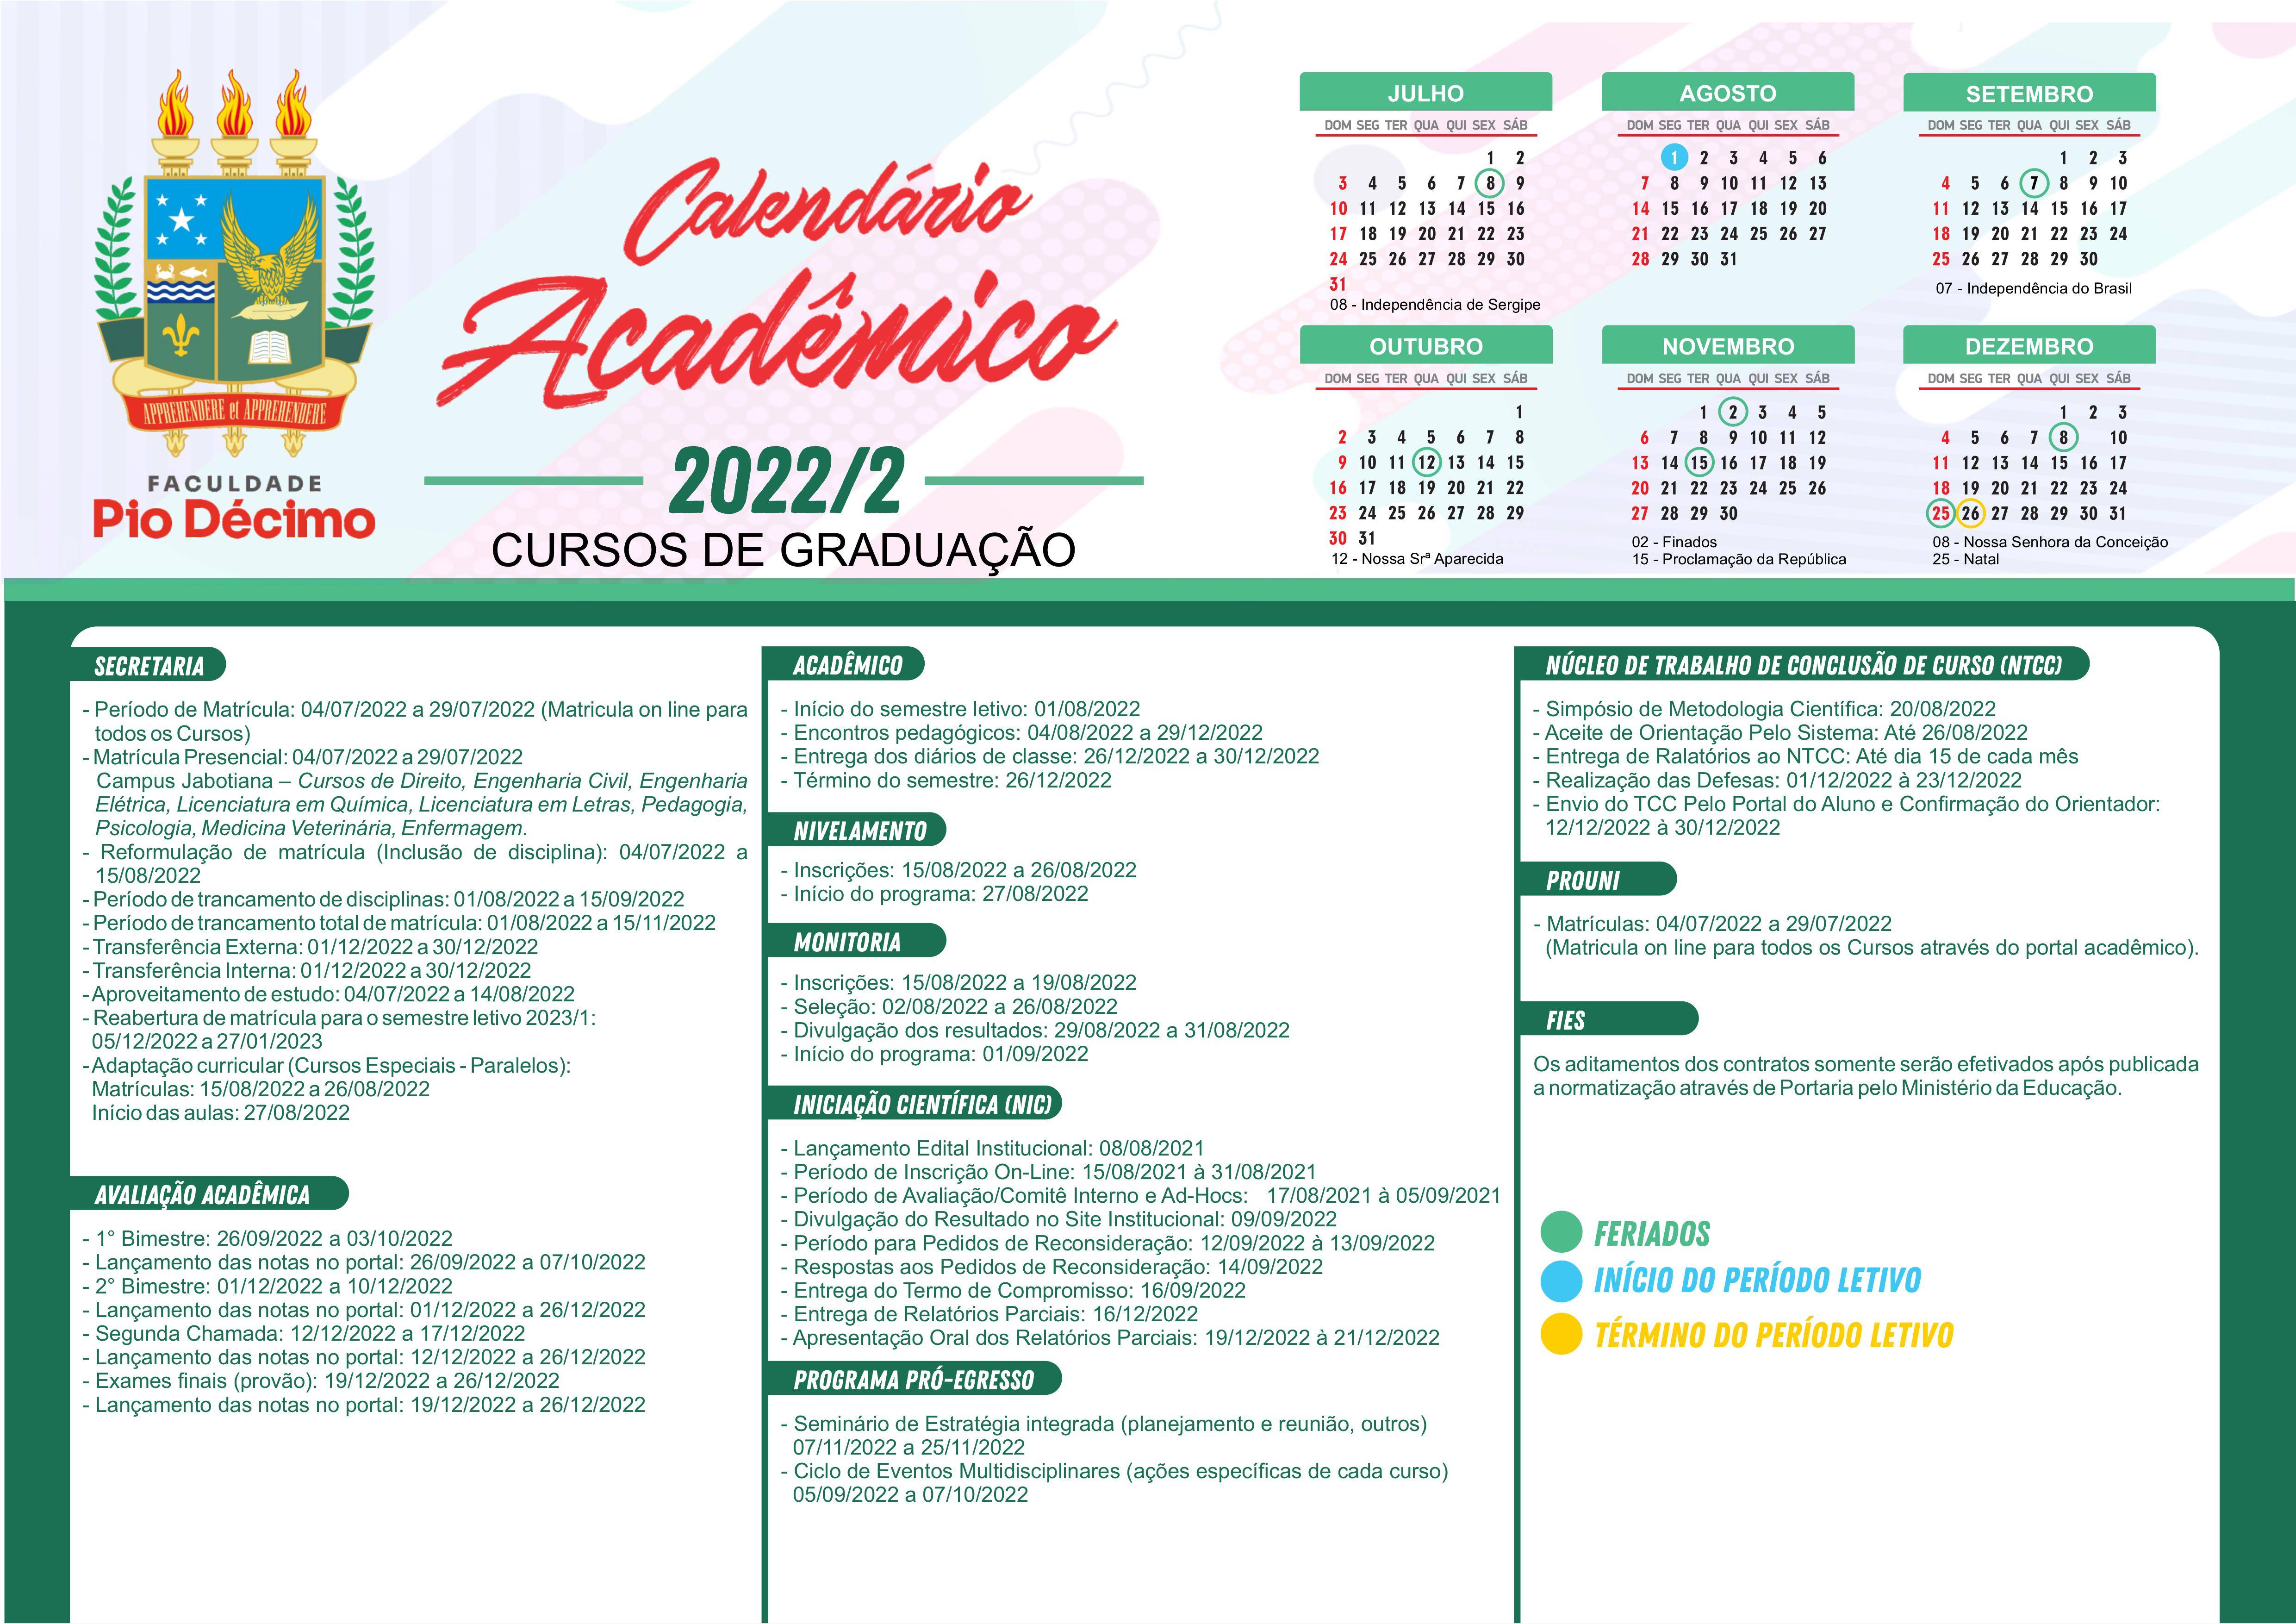 CALENDARIO_ACADEMICO_2022-2 FPD.jpg